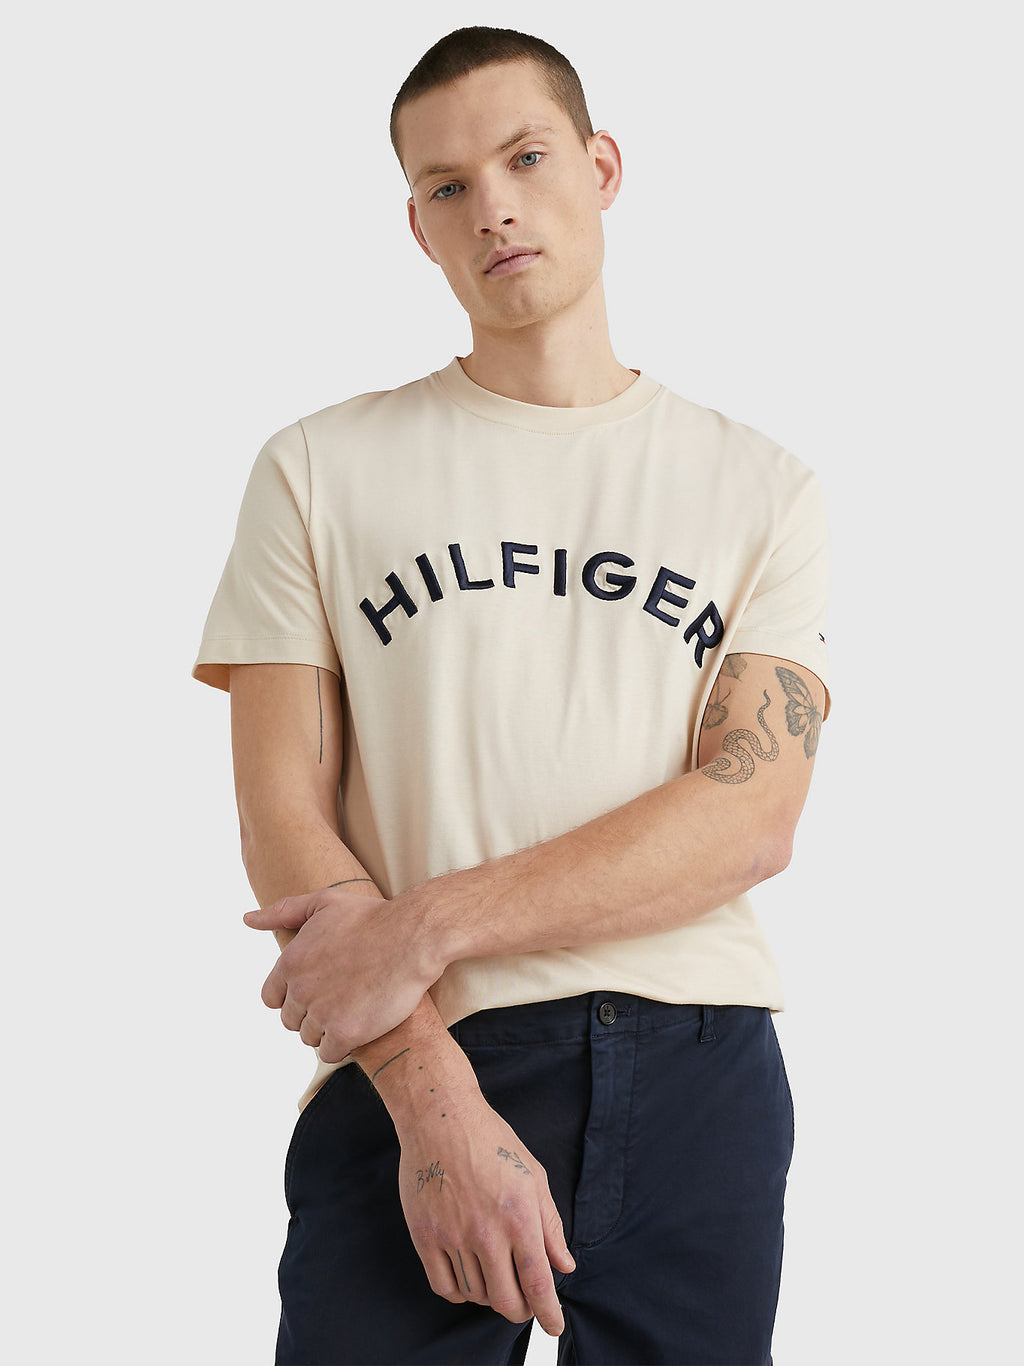 T-Shirt Tommy Hilfiger beige en coton bio pour homme I Georgespaul